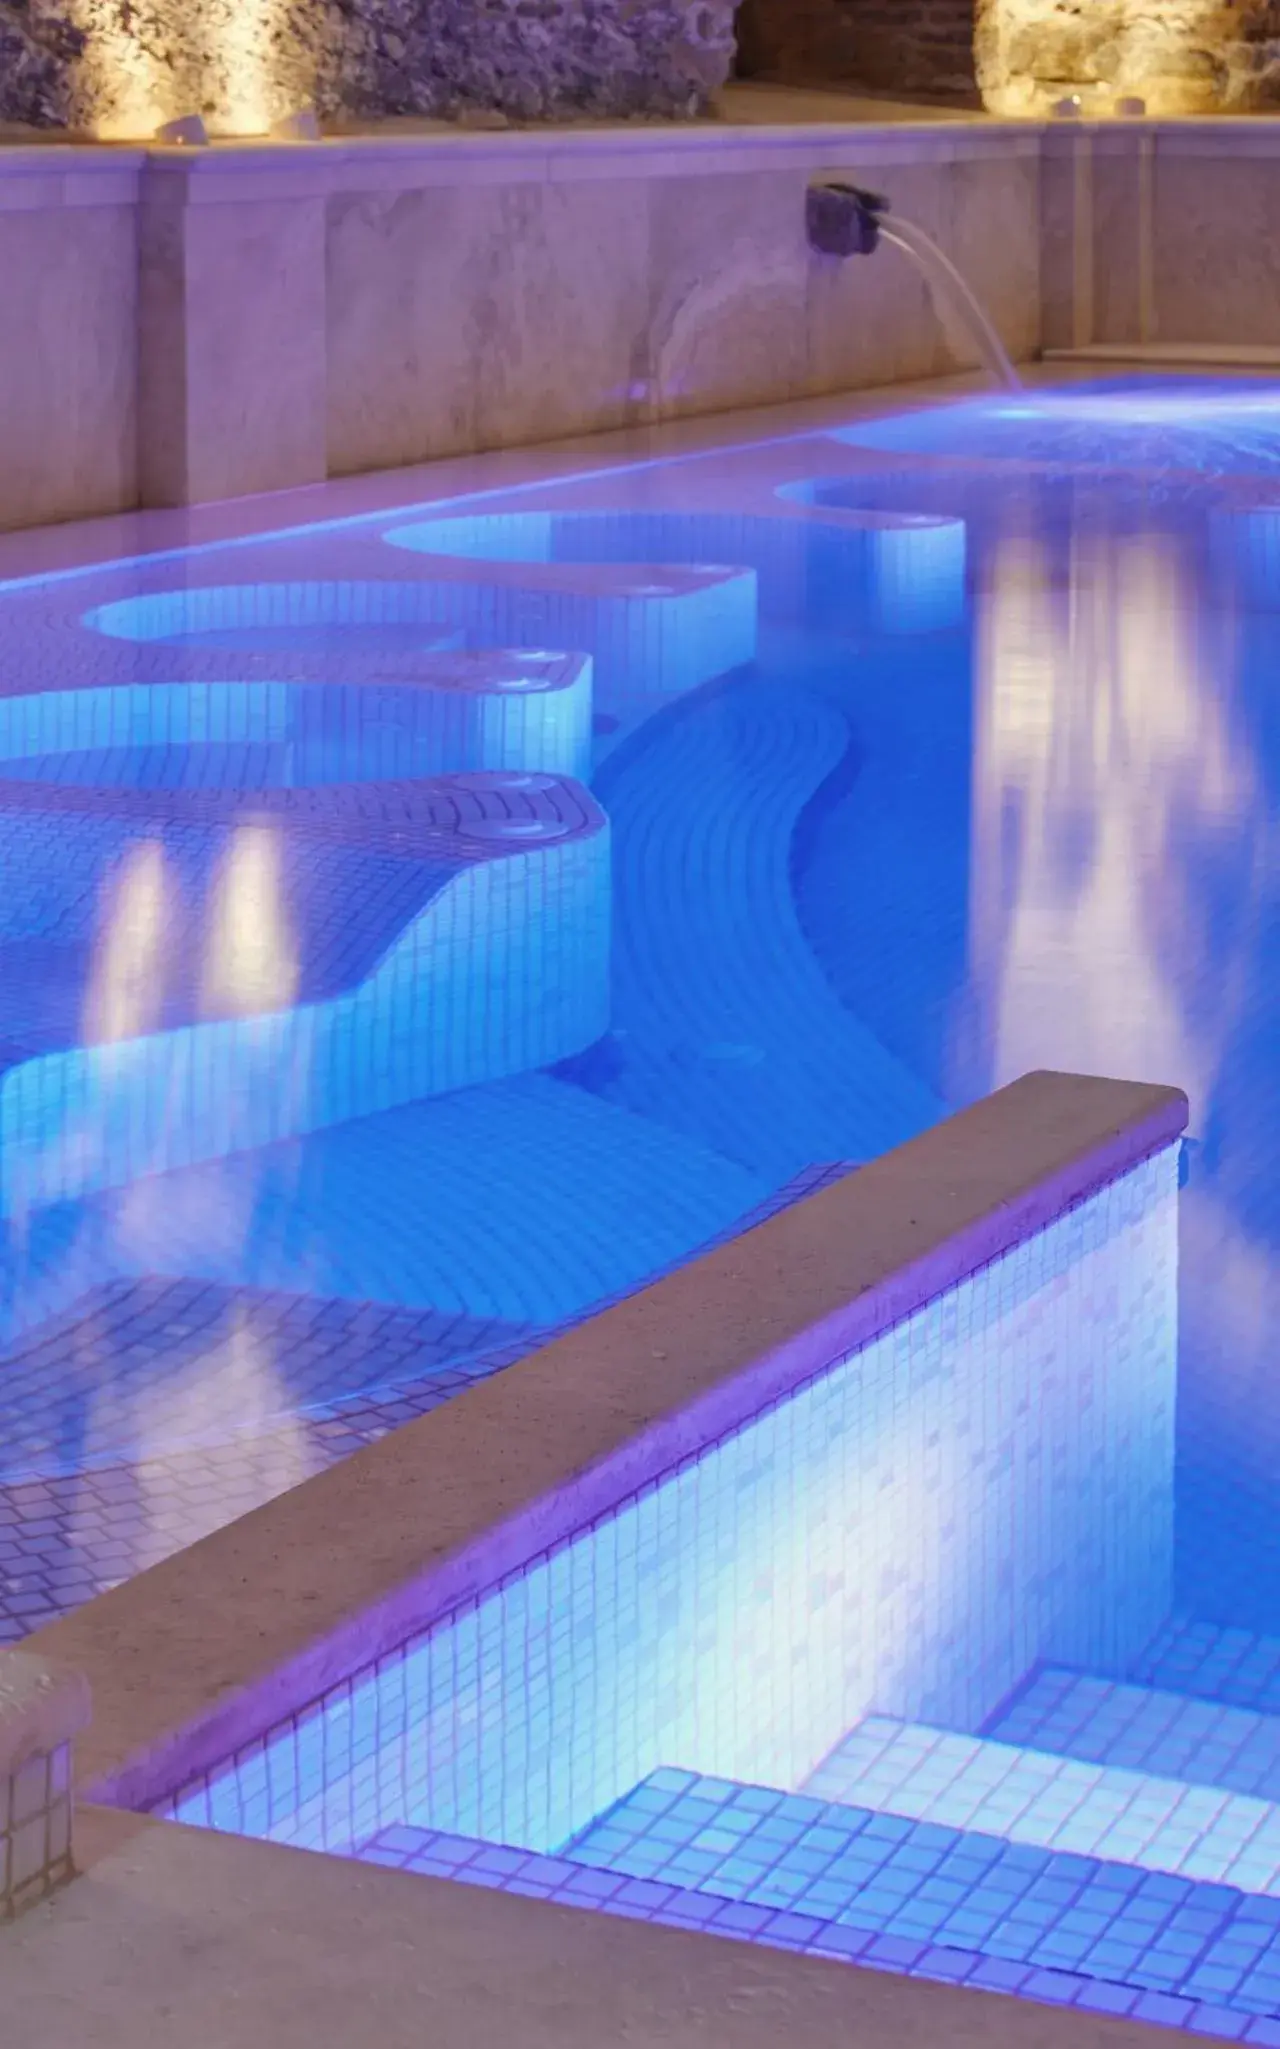 Hot Tub, Swimming Pool in Monastero Di Cortona Hotel & Spa